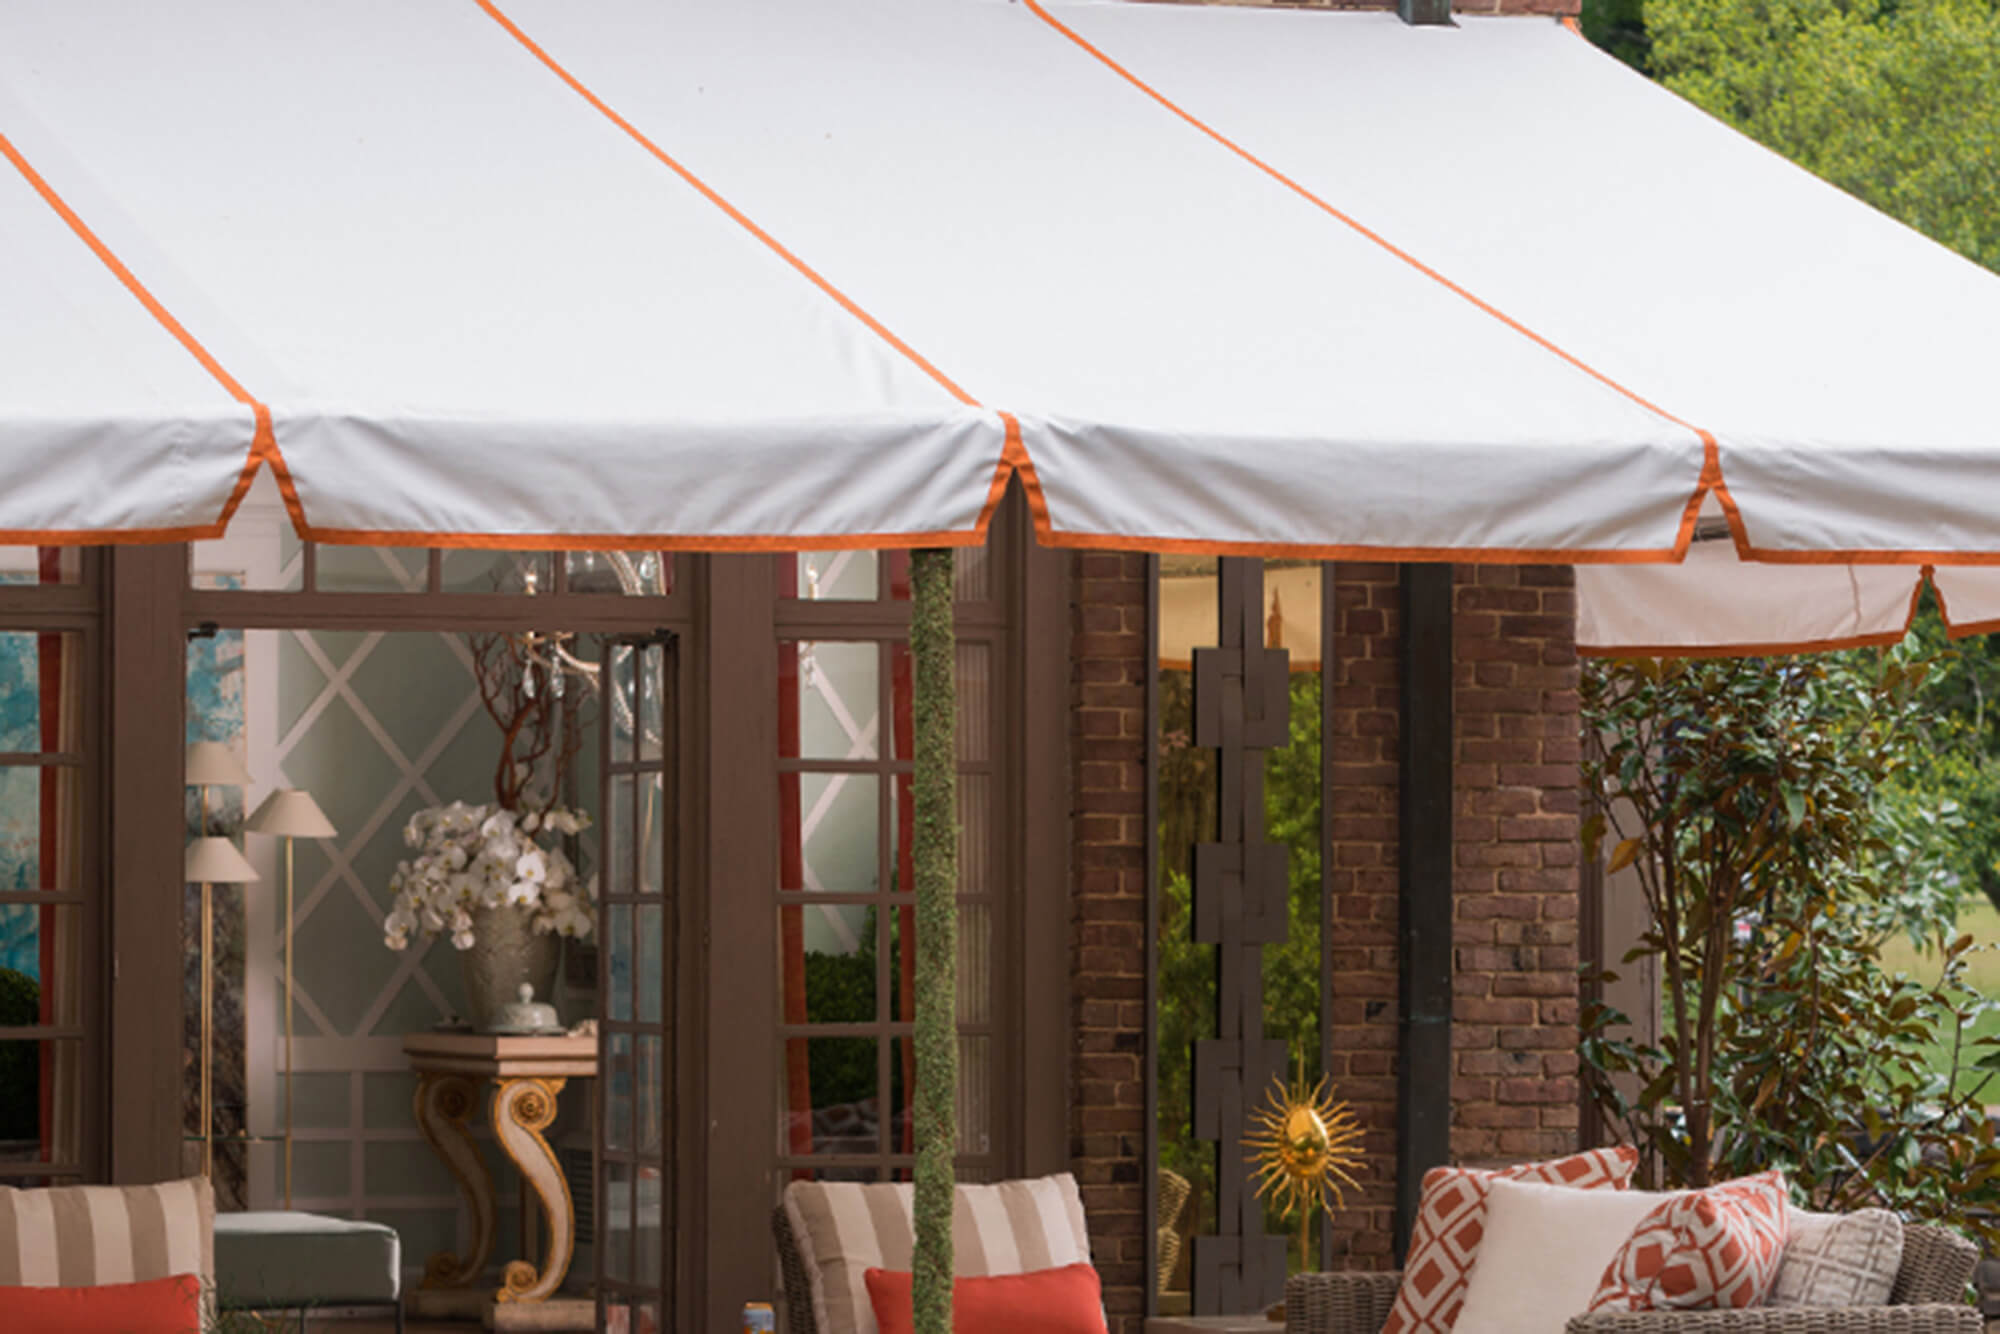 Patio coperto con una tenda a struttura fissa con tessuto Sunbrella e cuciture arancioni